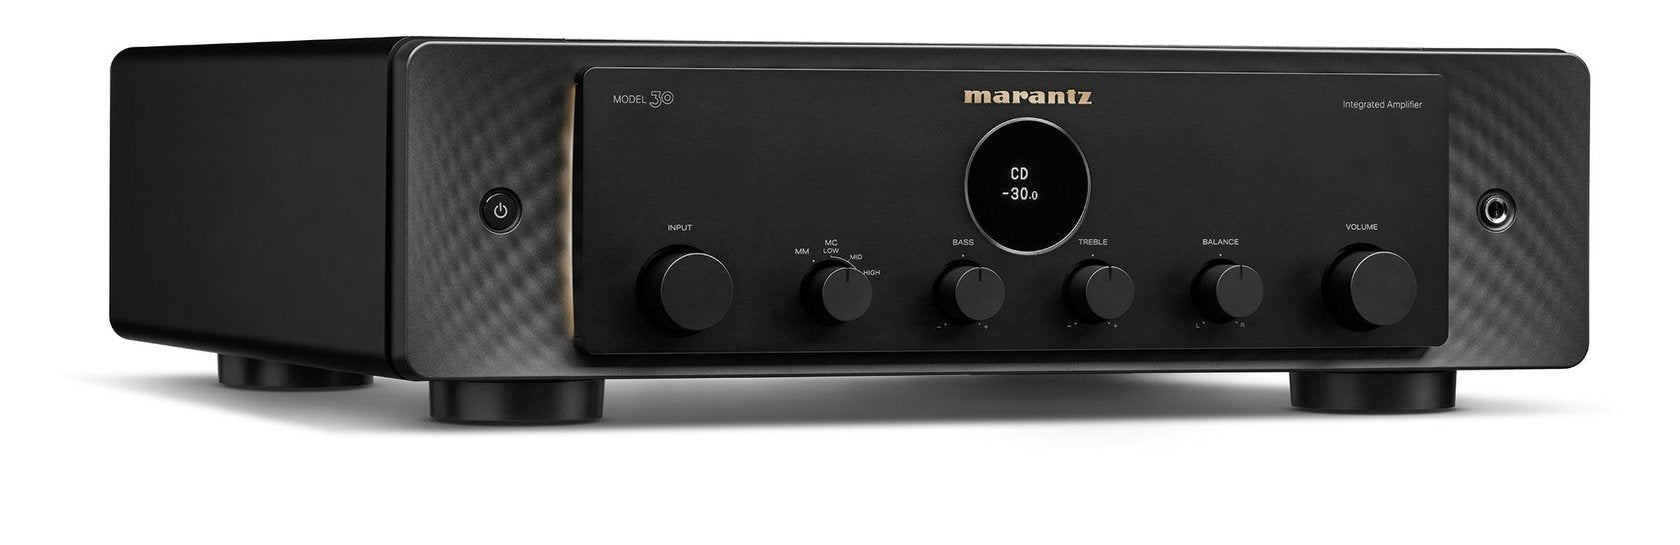 Marantz MODEL 30 stereo amplifier